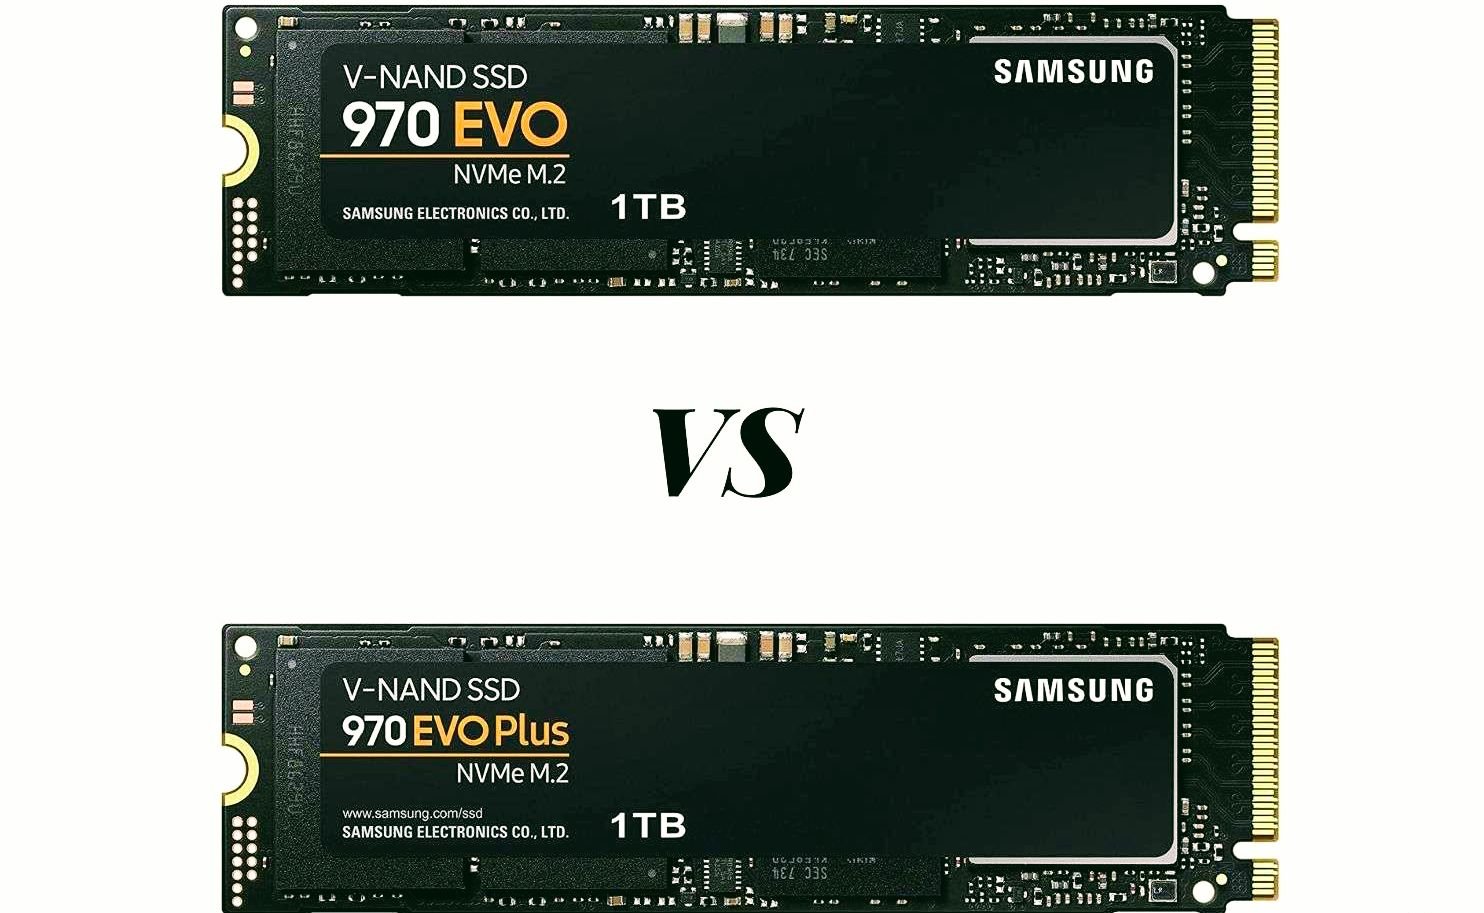 Samsung 970 Evo Plus Vs Samsung 970 Evo